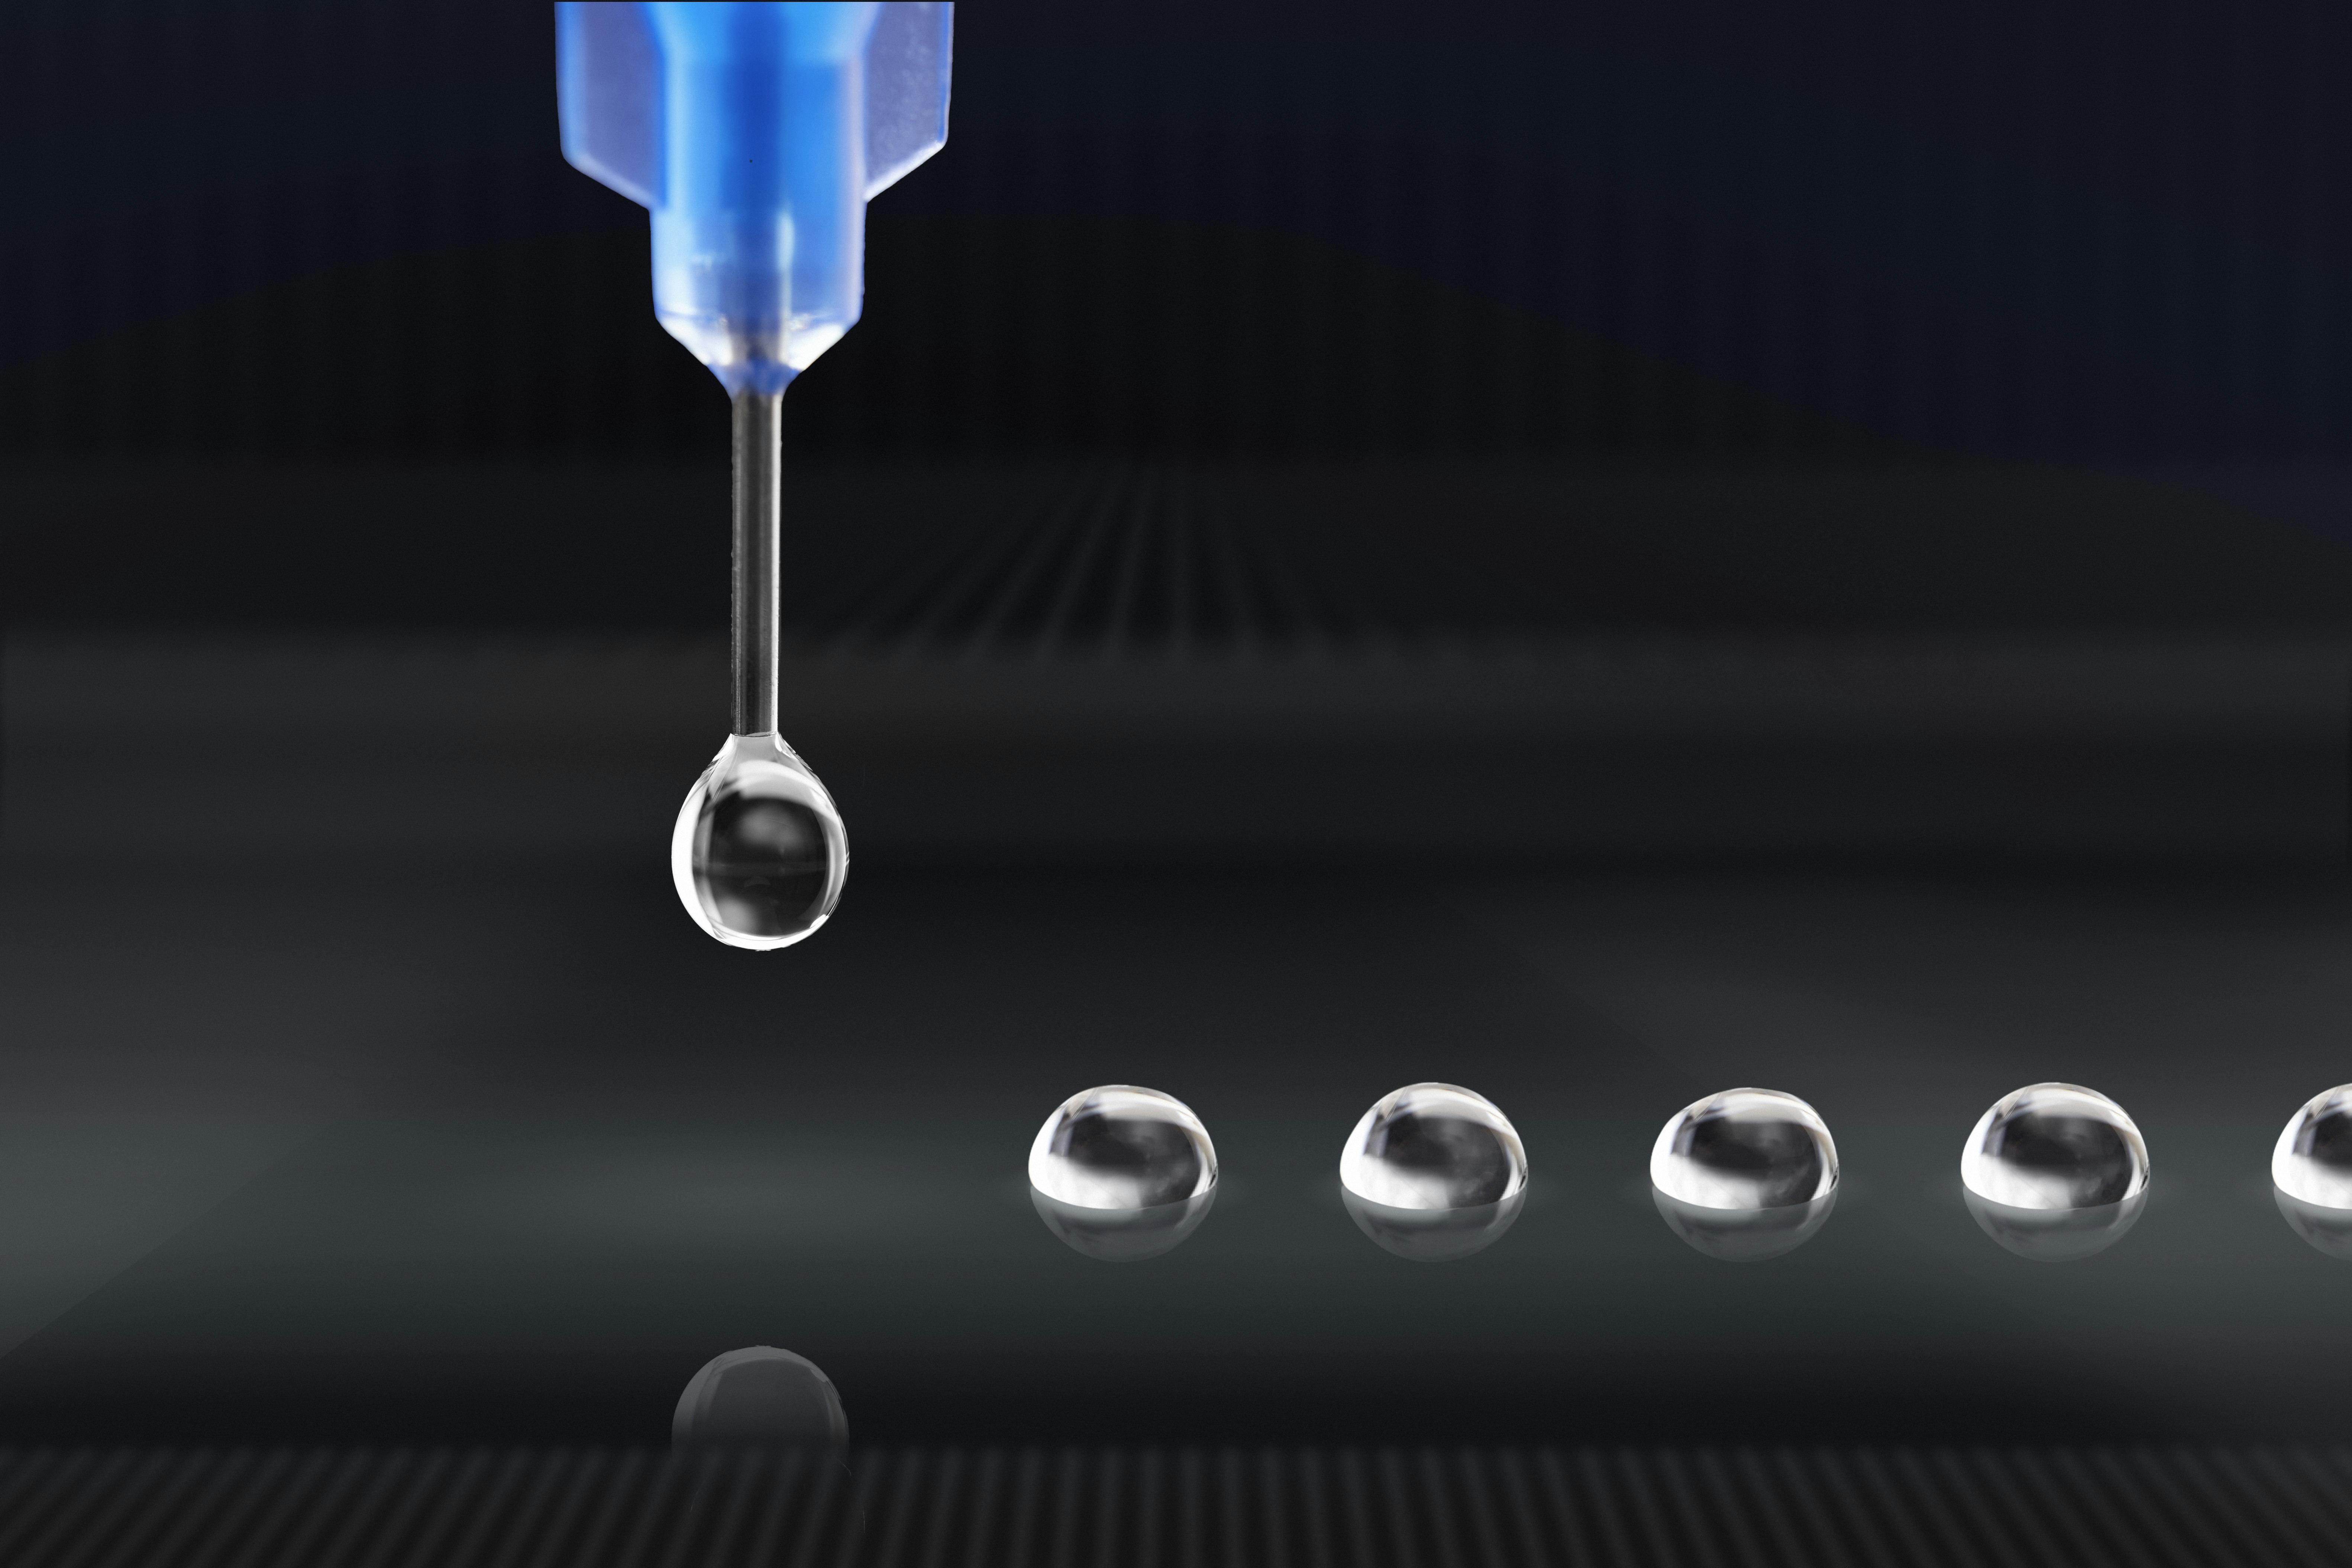 Precision liquid dispensing with closed-loop control 